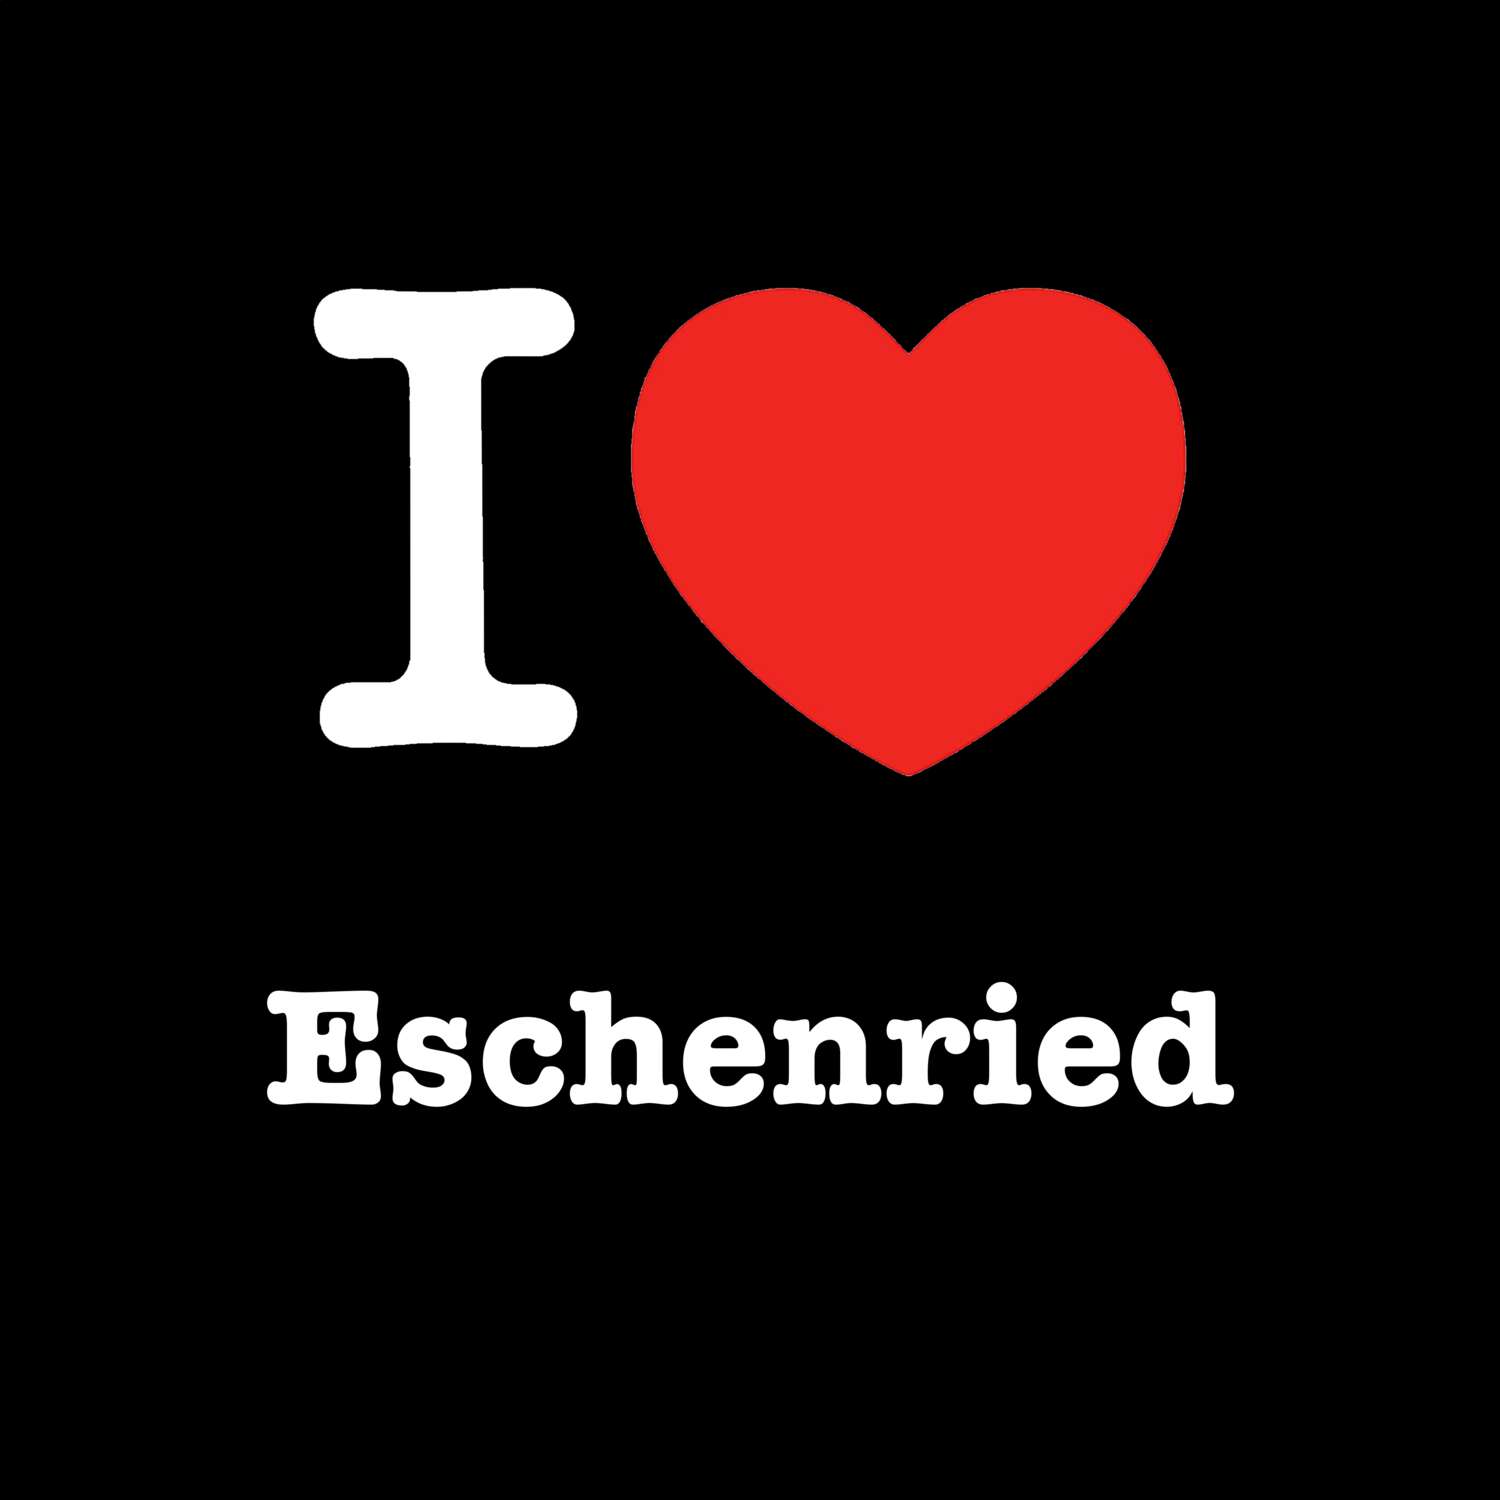 Eschenried T-Shirt »I love«